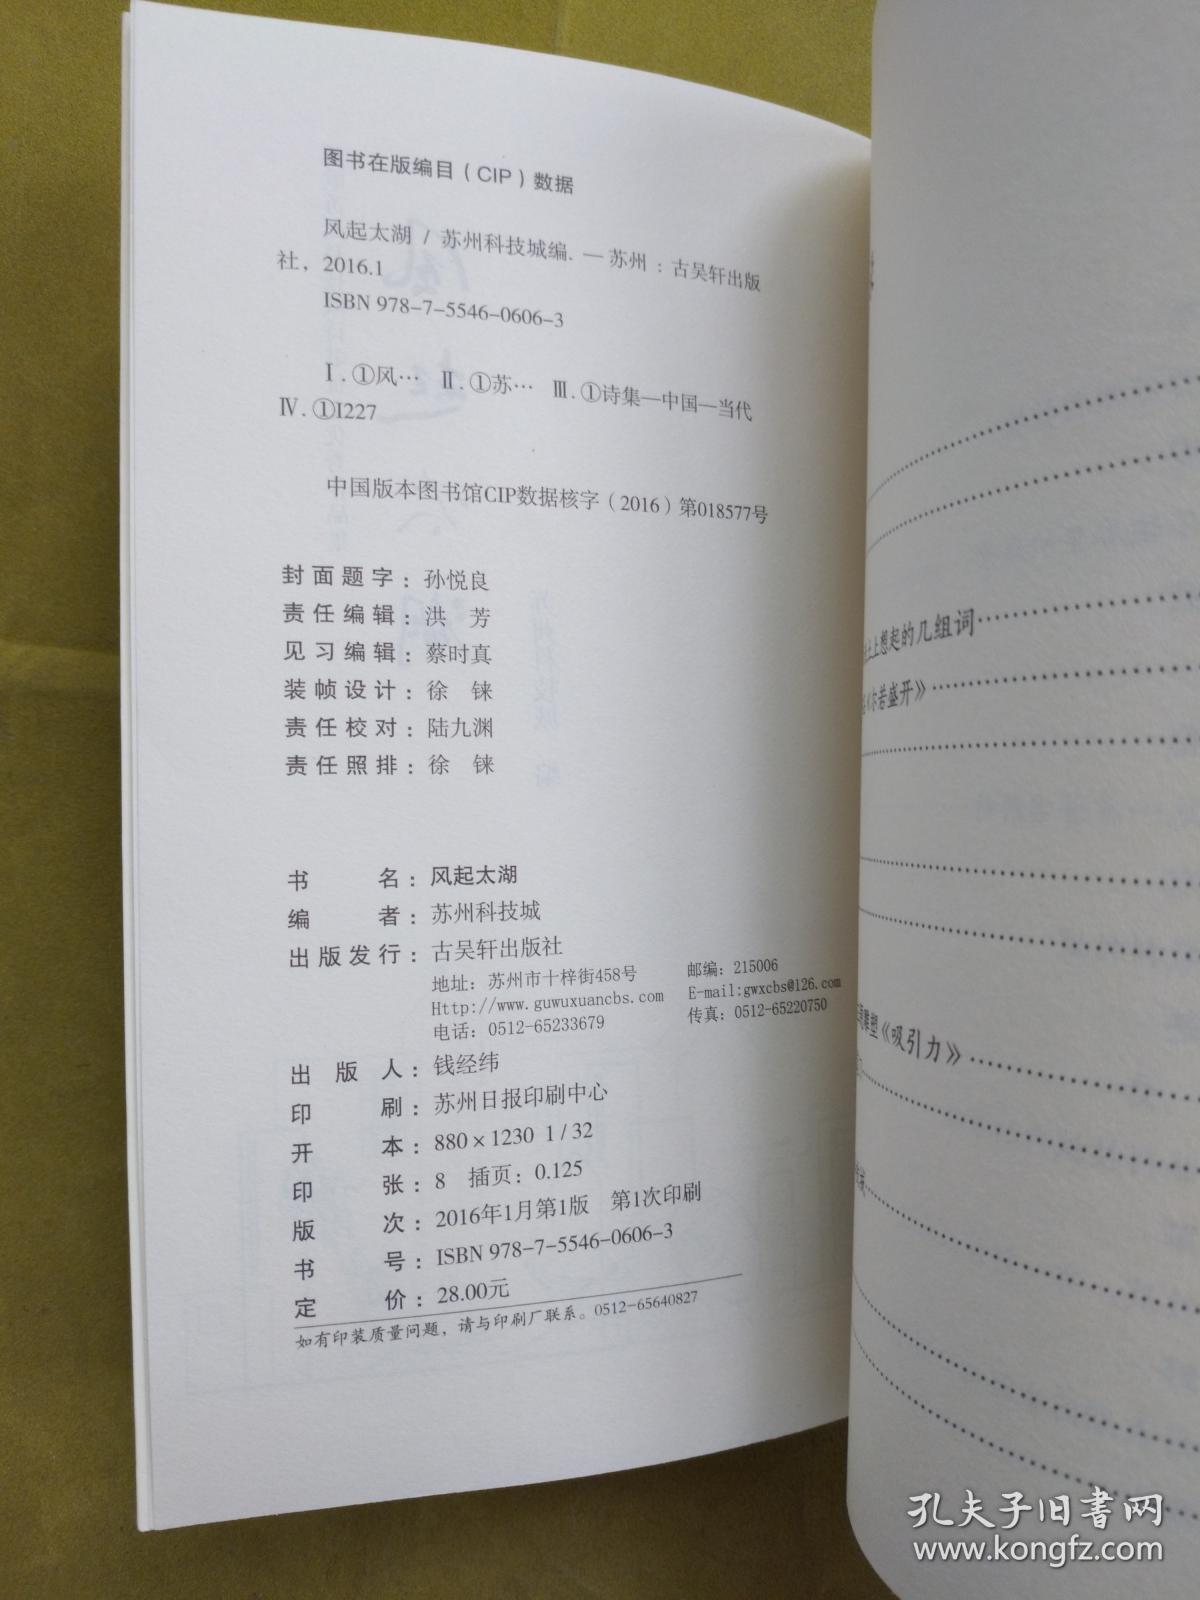 风起太湖:放歌苏州科技城诗歌征文优秀作品集